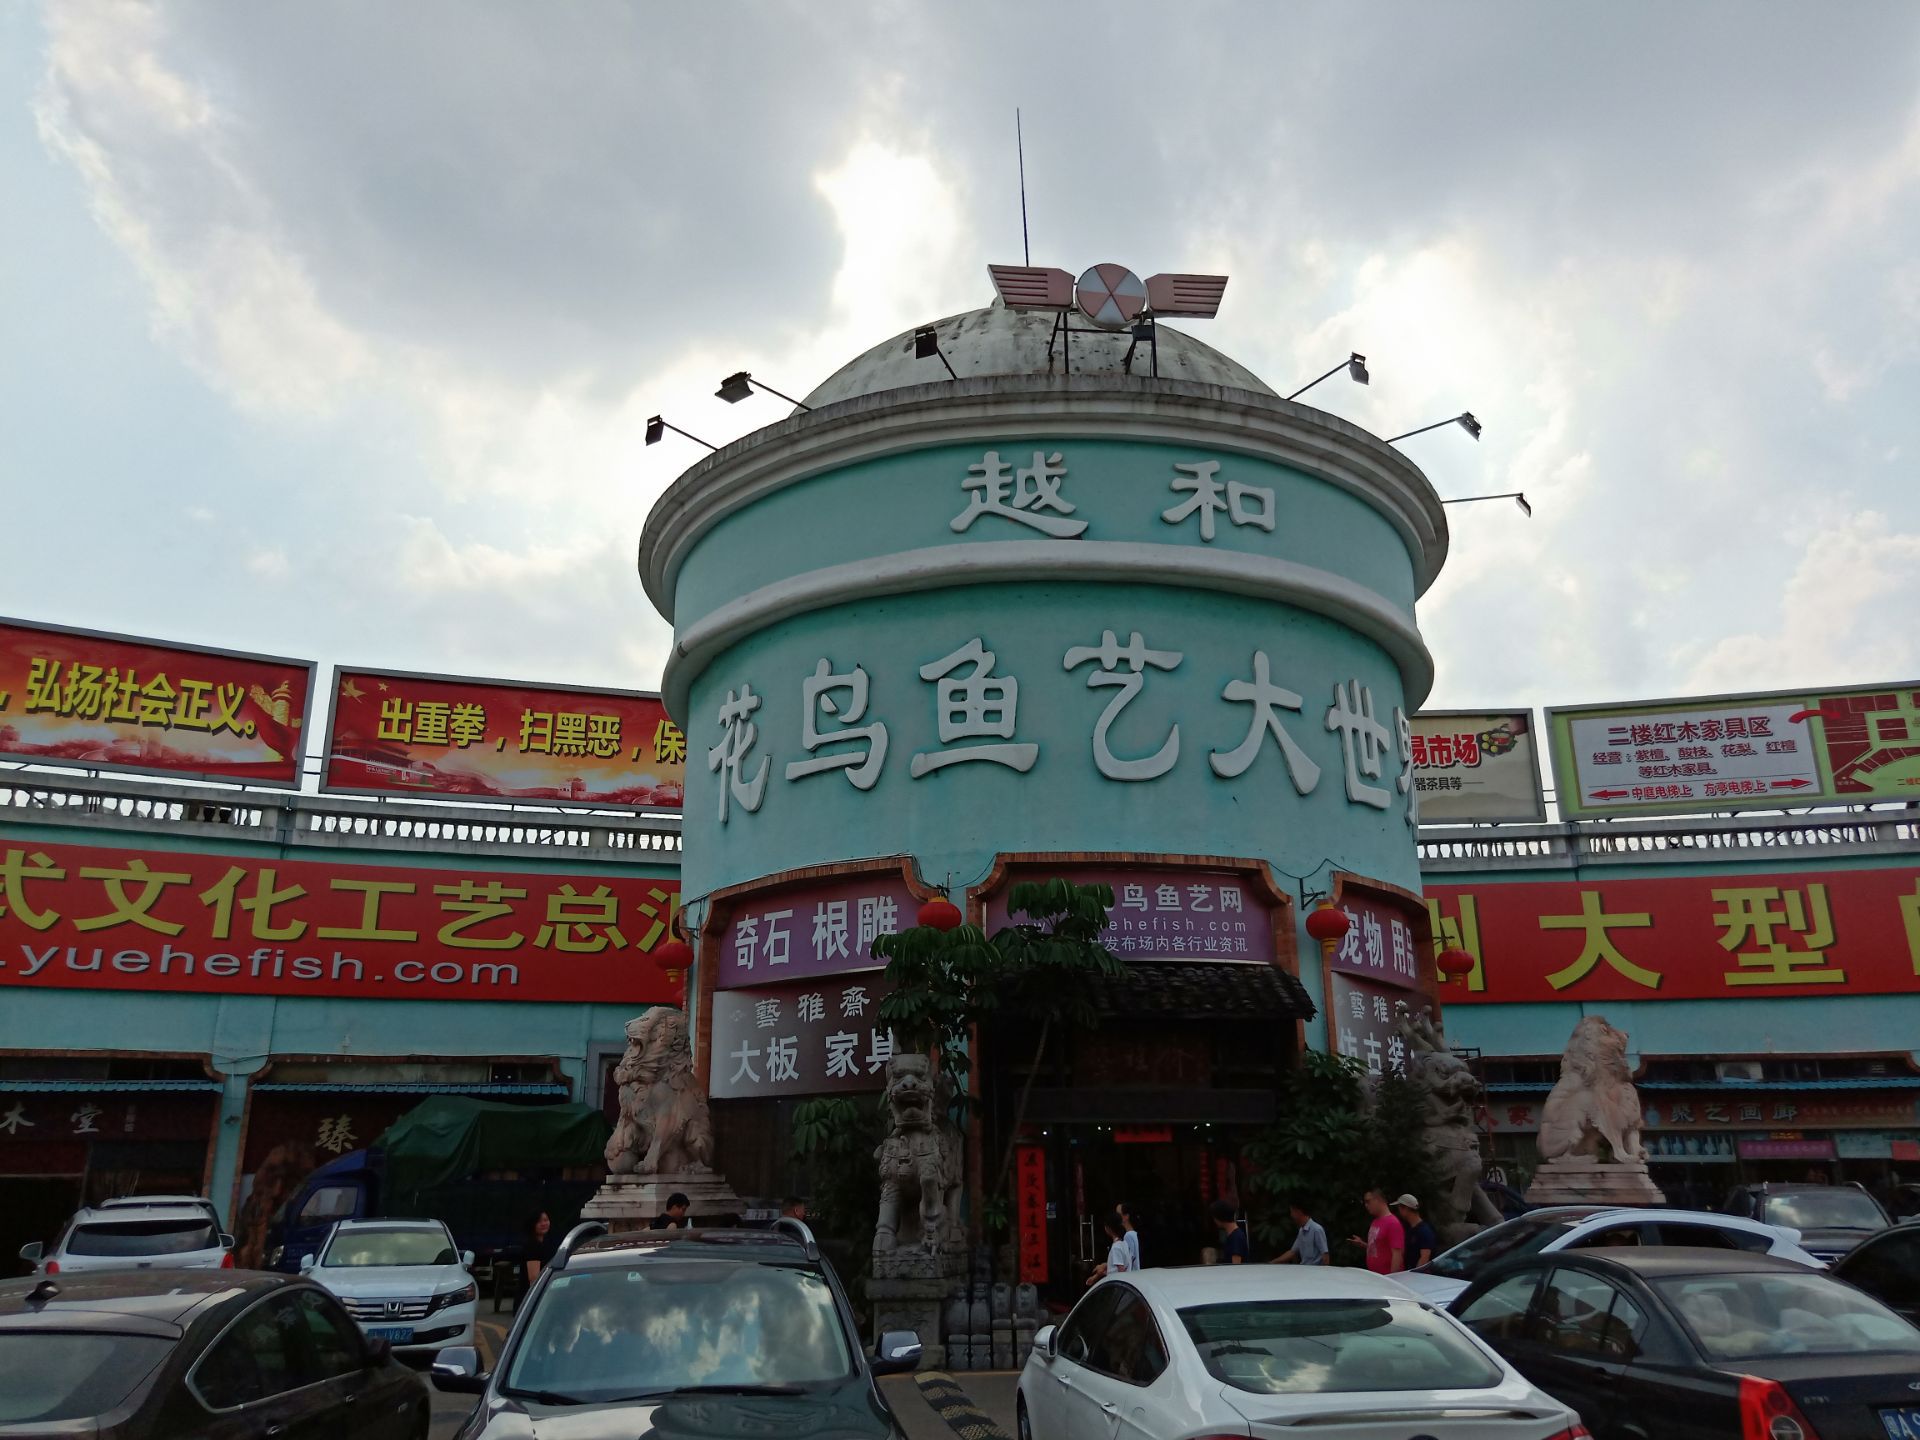 【携程攻略】广州花地湾花鸟鱼虫市场购物,广州芳村的花鸟鱼虫义大